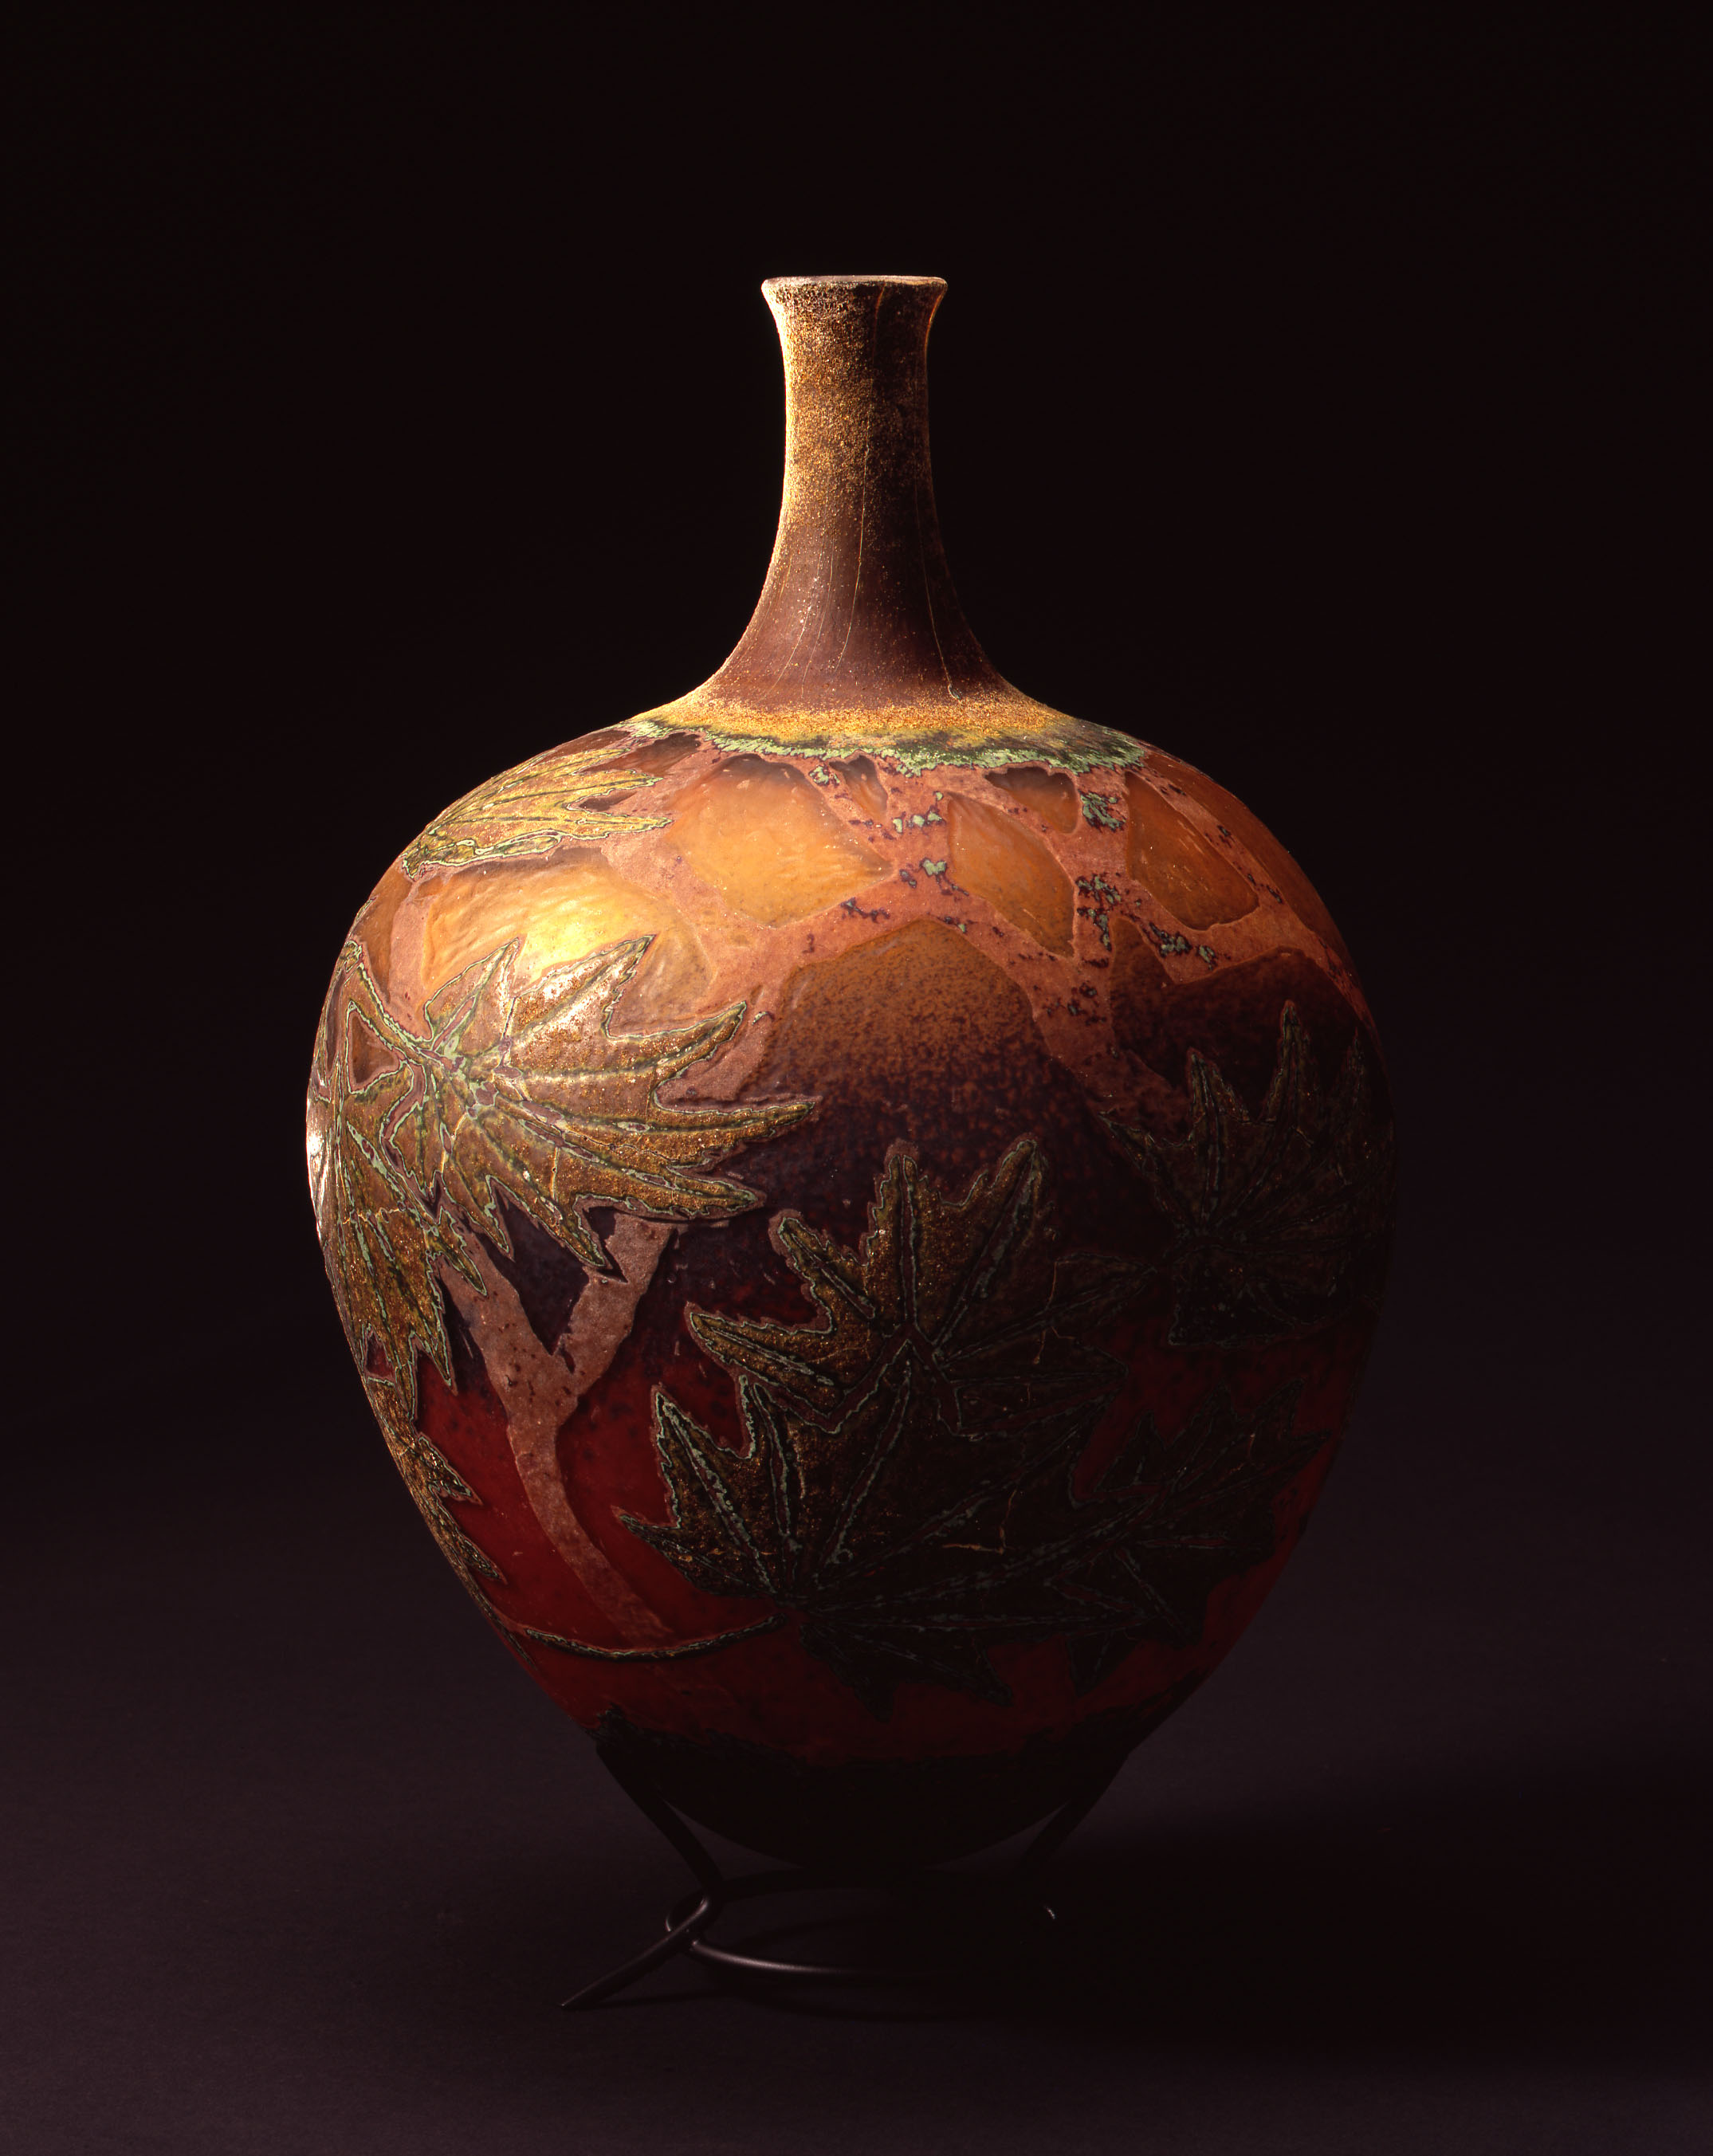  William Morris,&nbsp; Vessel with Vine Maple Leaves  &nbsp; (2004, glass, 14 1/2 x 9 5/8 x 9 5/8 inches), WM.31 